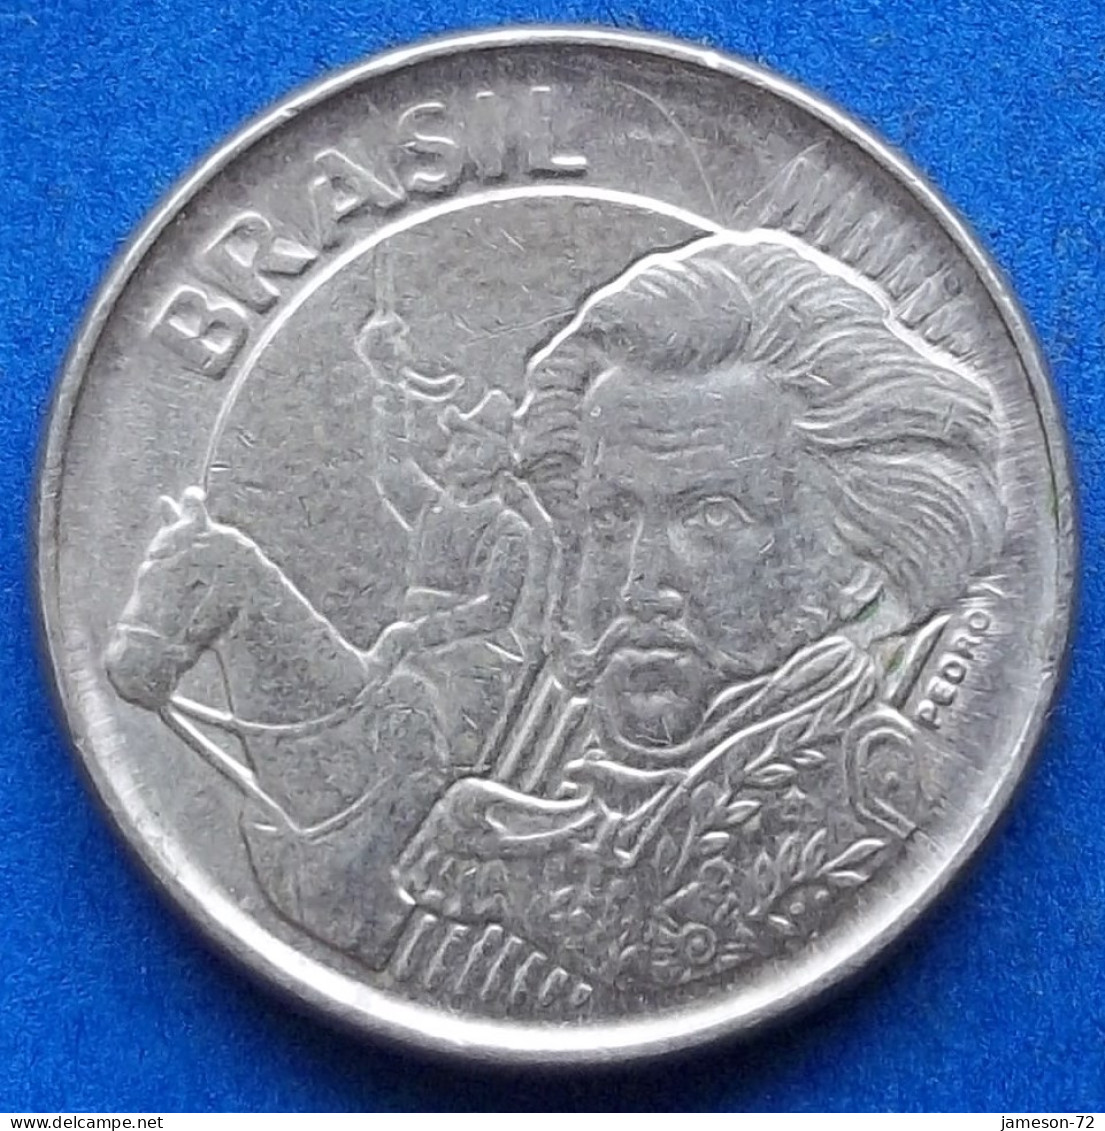 BRAZIL - 10 Centavos 2019 "Pedro I" KM# 649.2 Monetary Reform (1994) - Edelweiss Coins - Brasilien